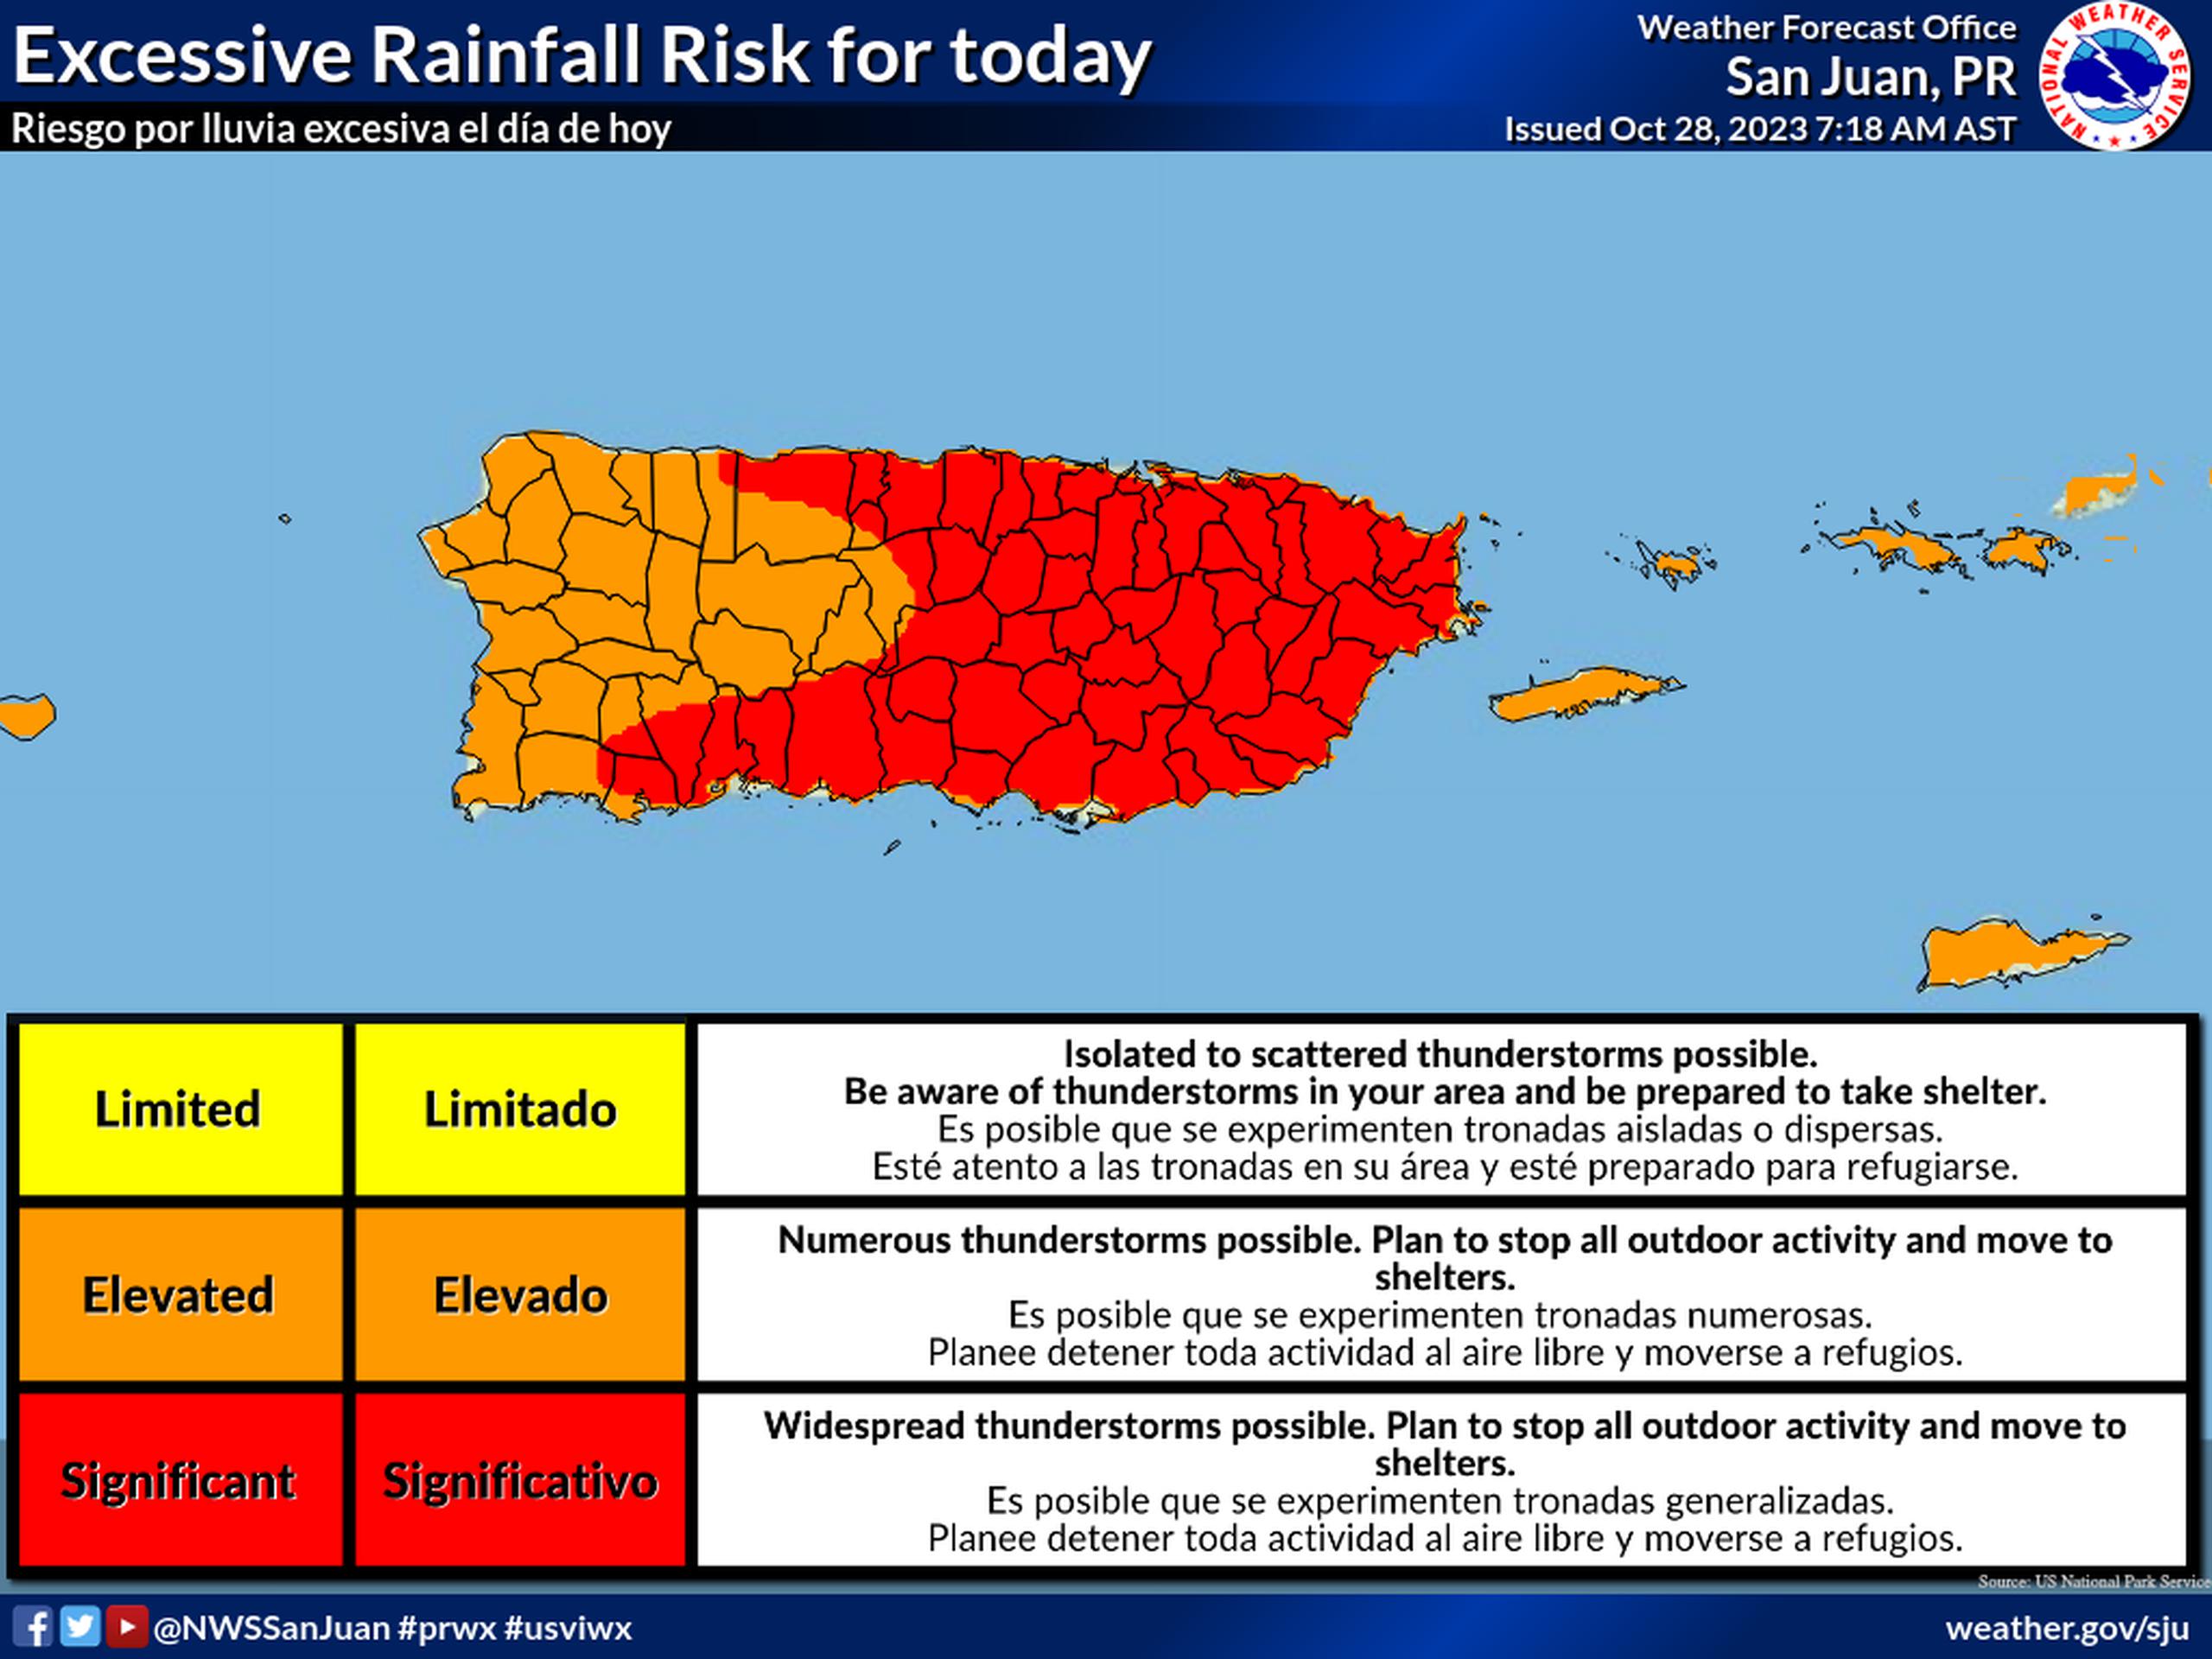 Pronóstico de riesgo por lluvia excesiva para el sábado, 28 de octubre de 2023, compartido por el Servicio Nacional de Meteorología en San Juan.